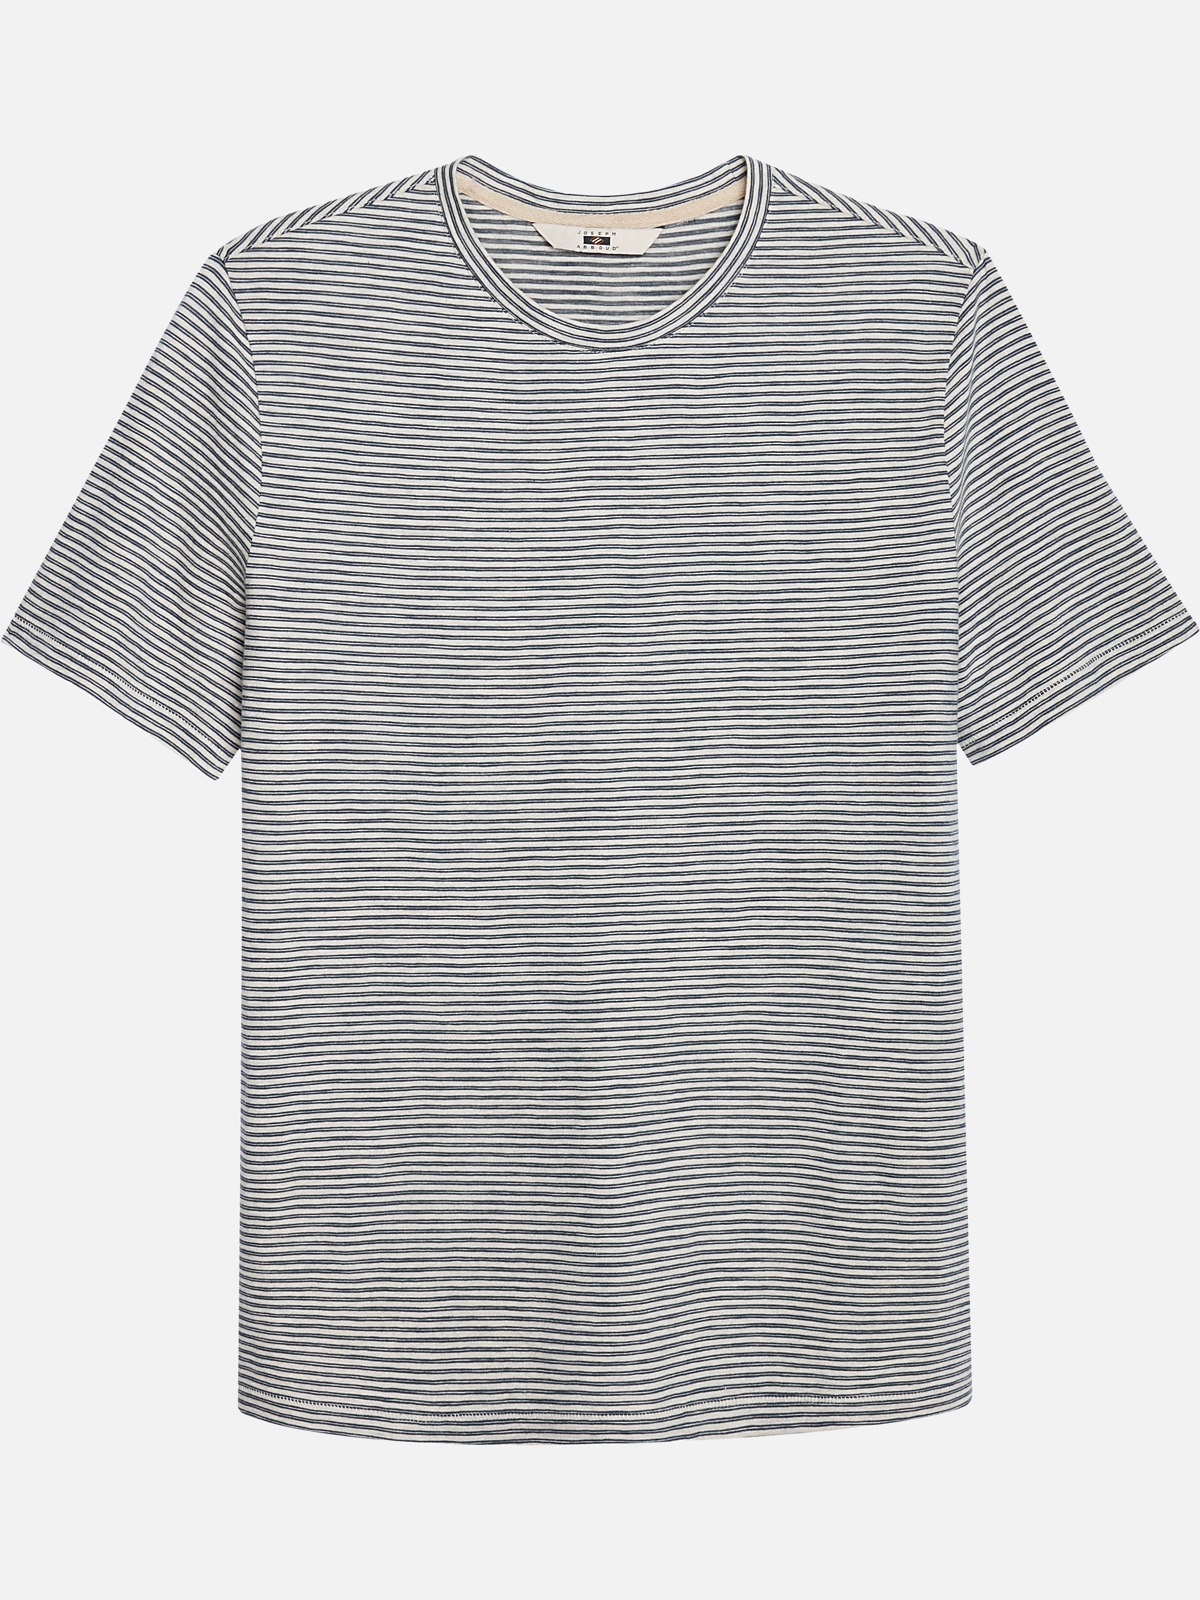 Joseph Abboud Crew Neck T-Shirt | All Sale| Men's Wearhouse